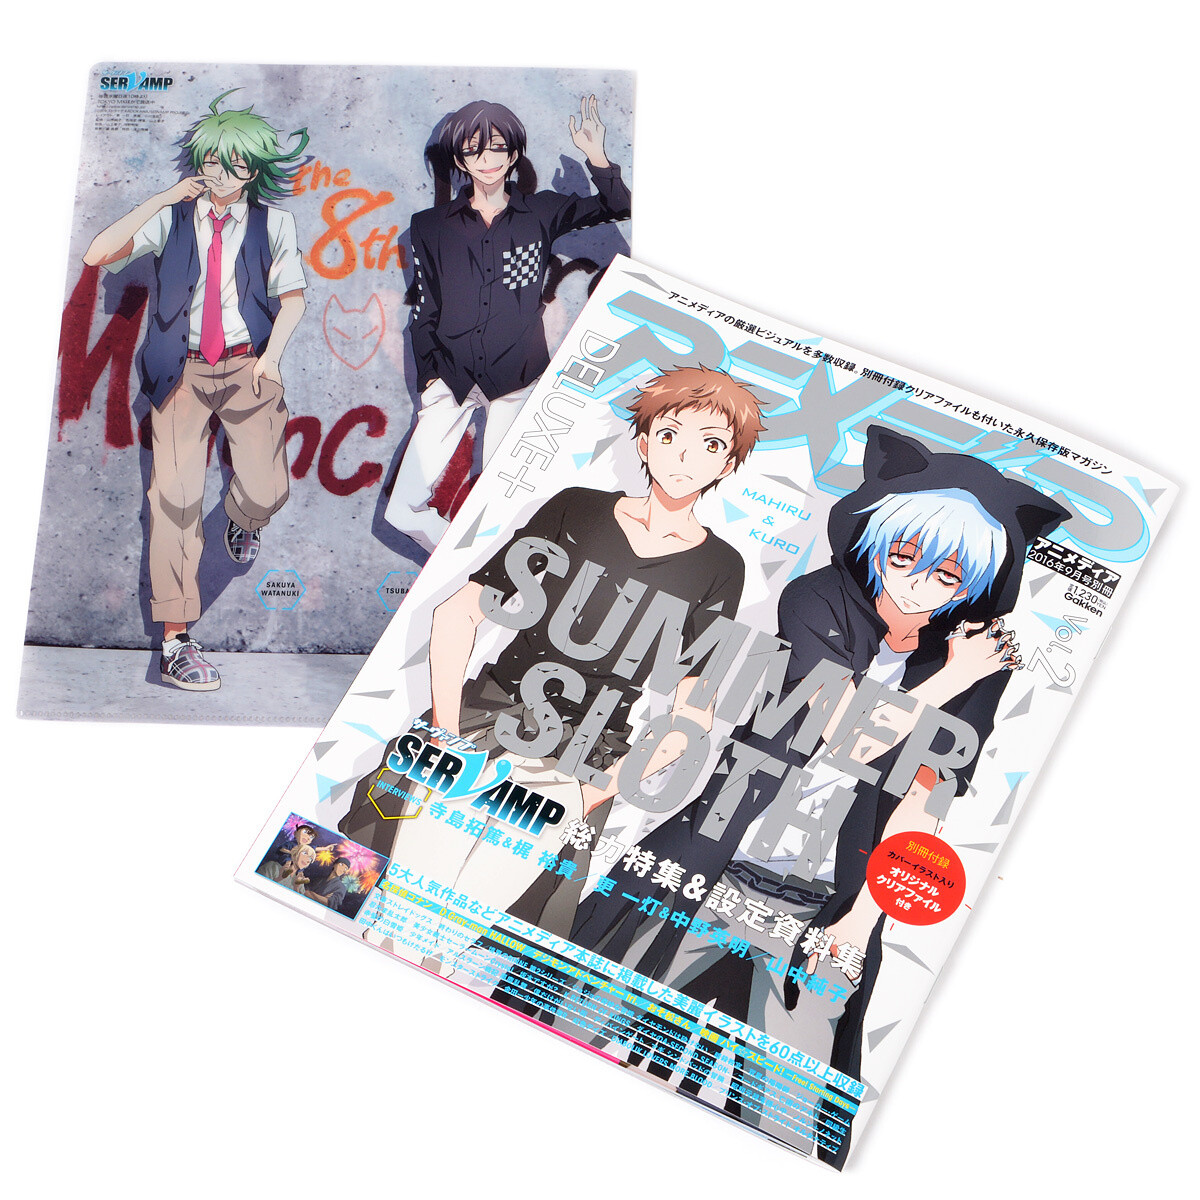 Animedia Deluxe Vol 2 September 16 Otakumode Com